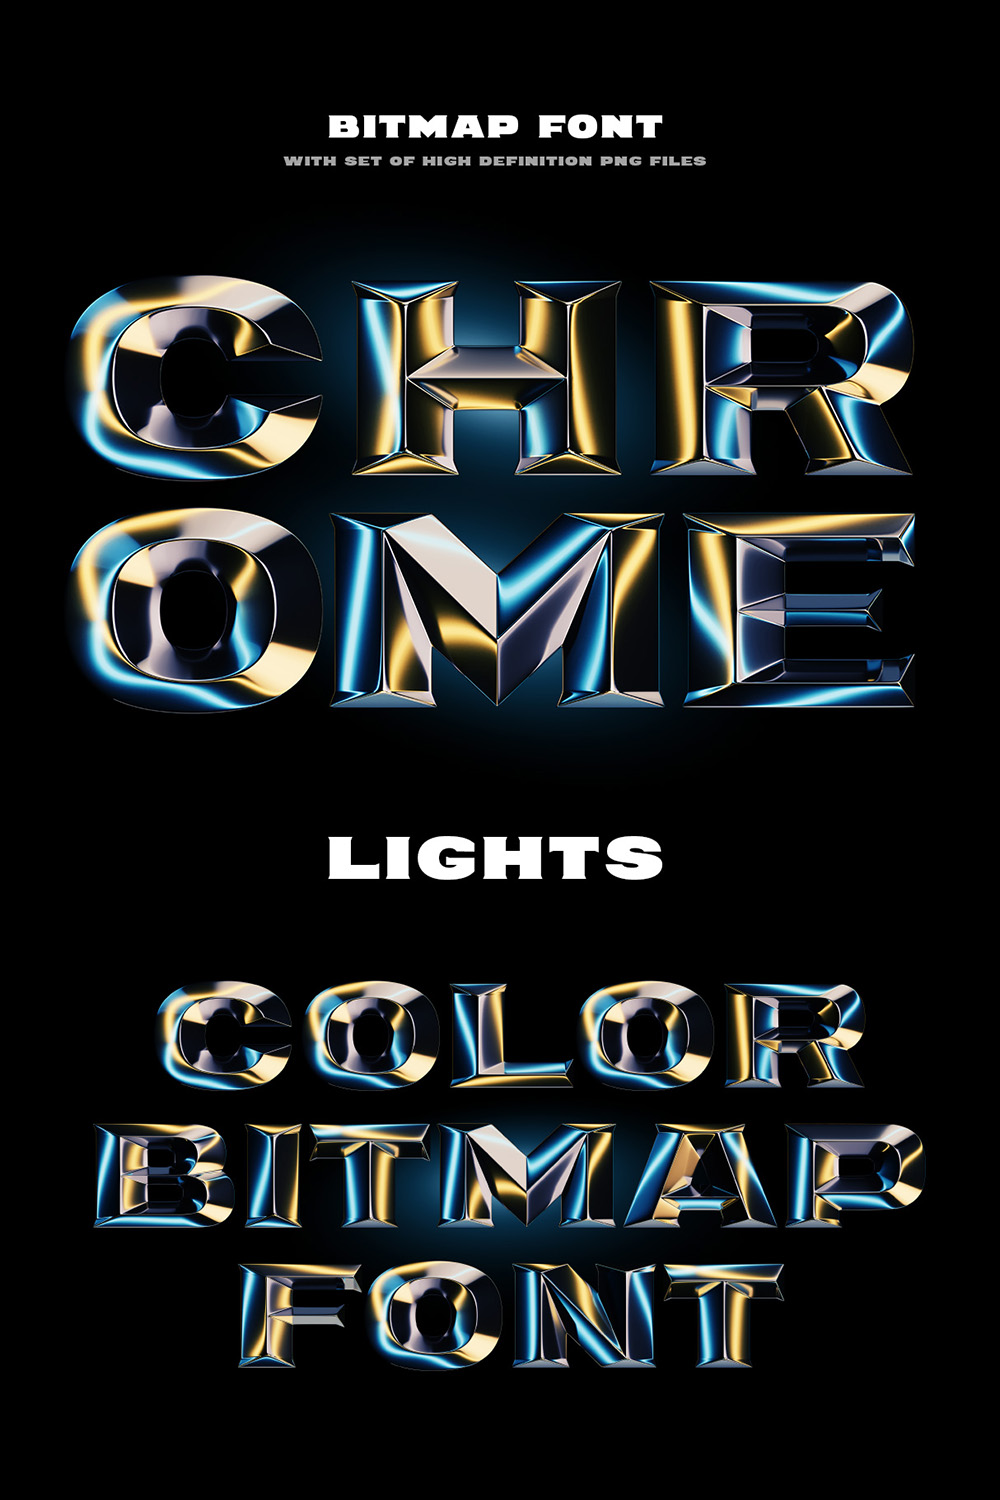 Chrome Lights Bitmap Color Font Design pinterest image.